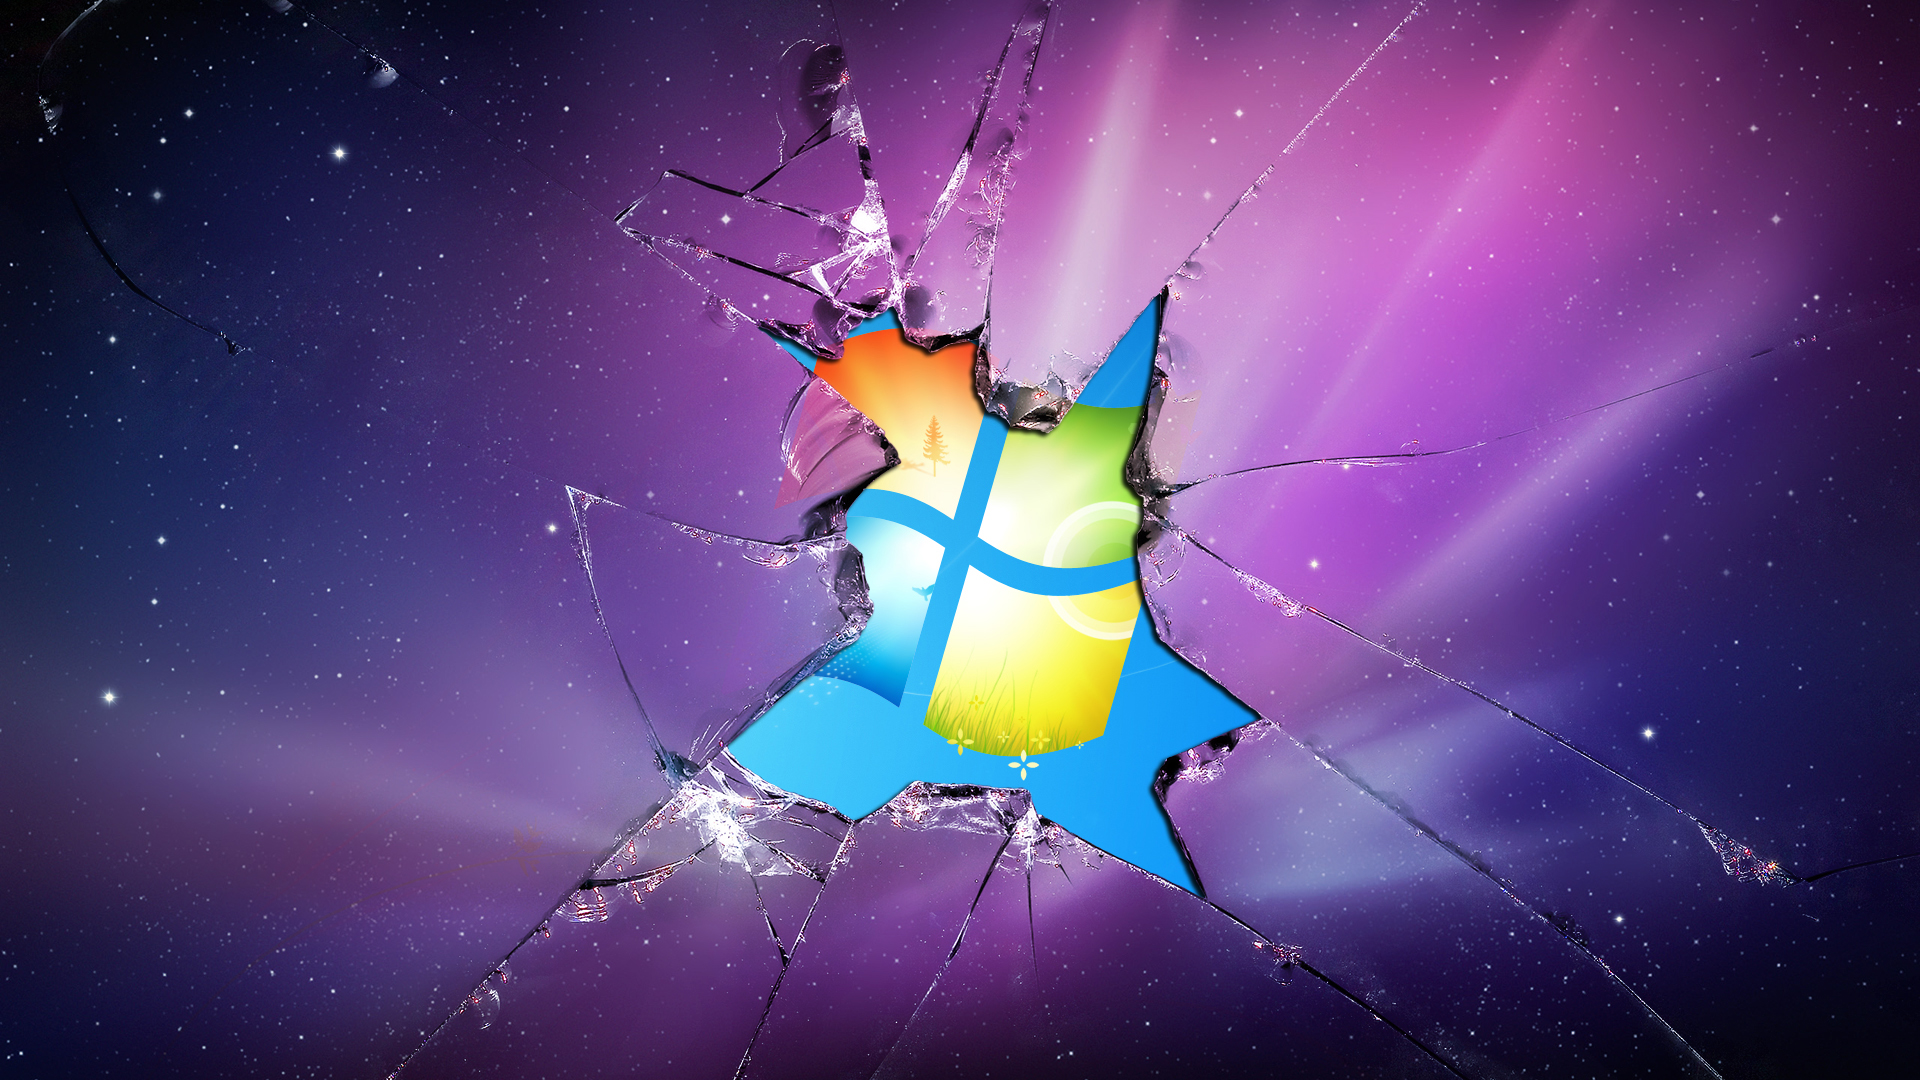 Broken Windows Pictures Image